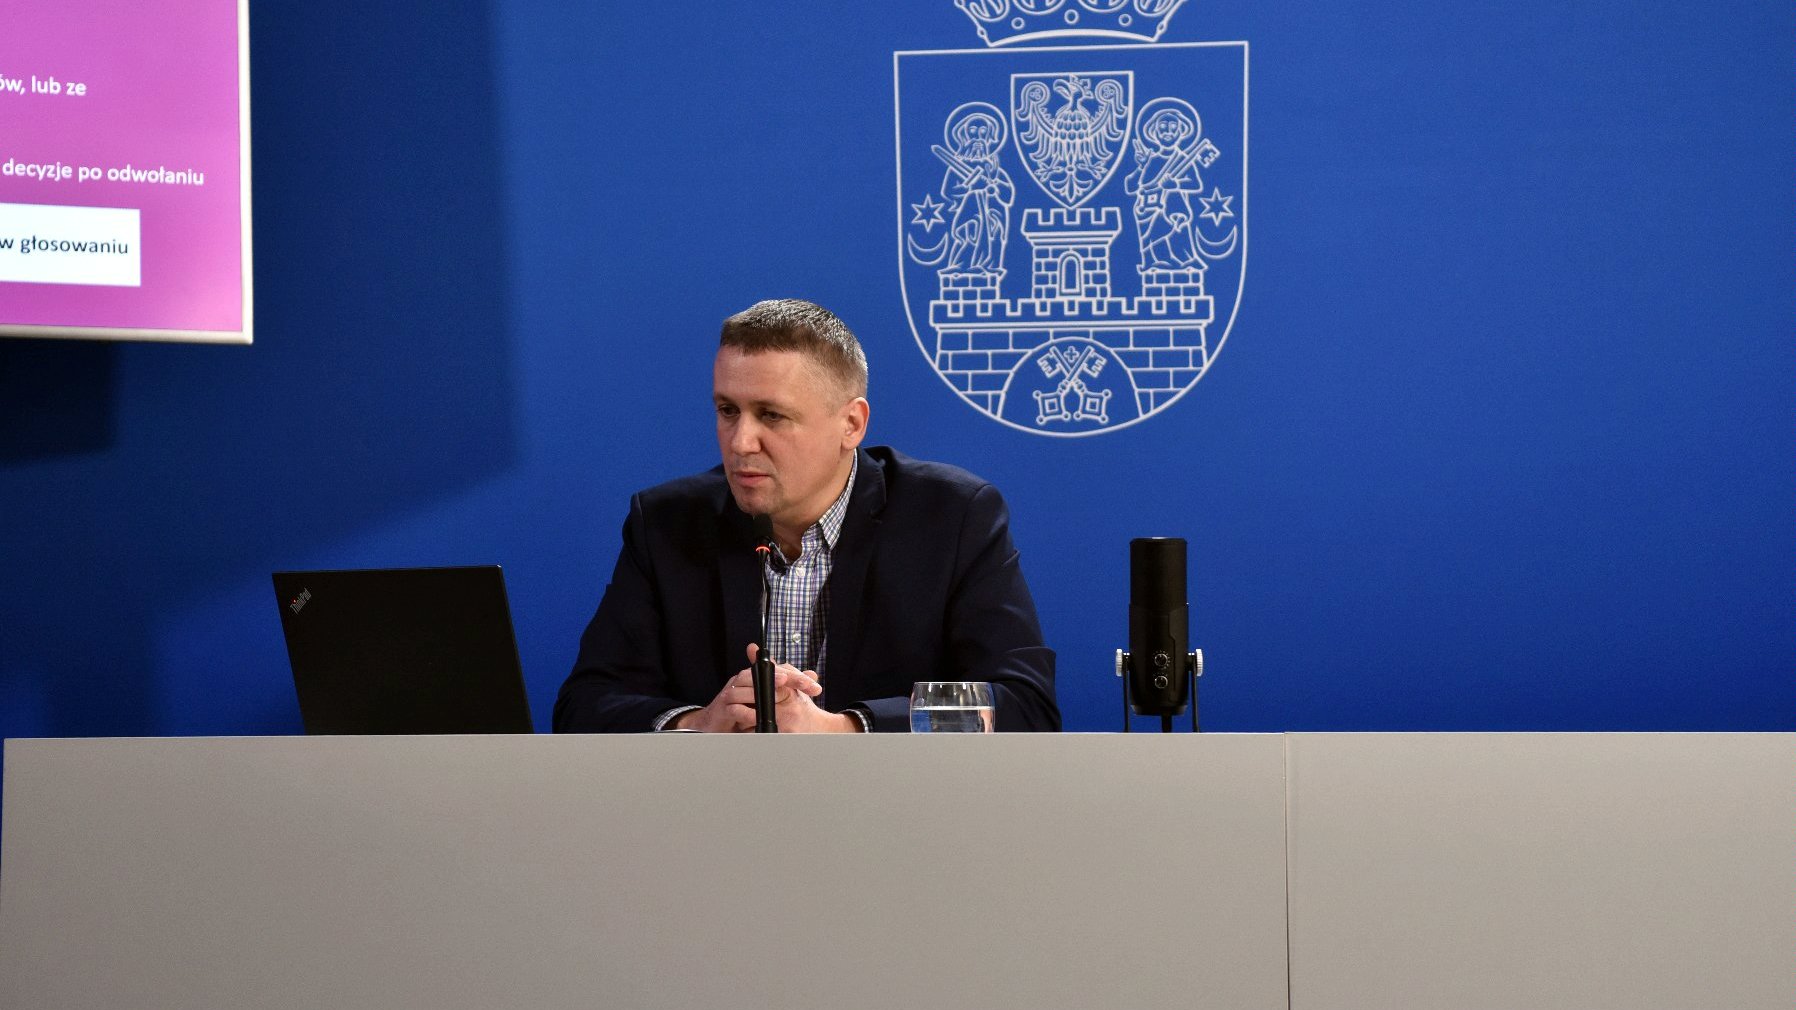 Na zdjęciu dyrektor gabinetu prezydenta Poznania na niebieskim tle